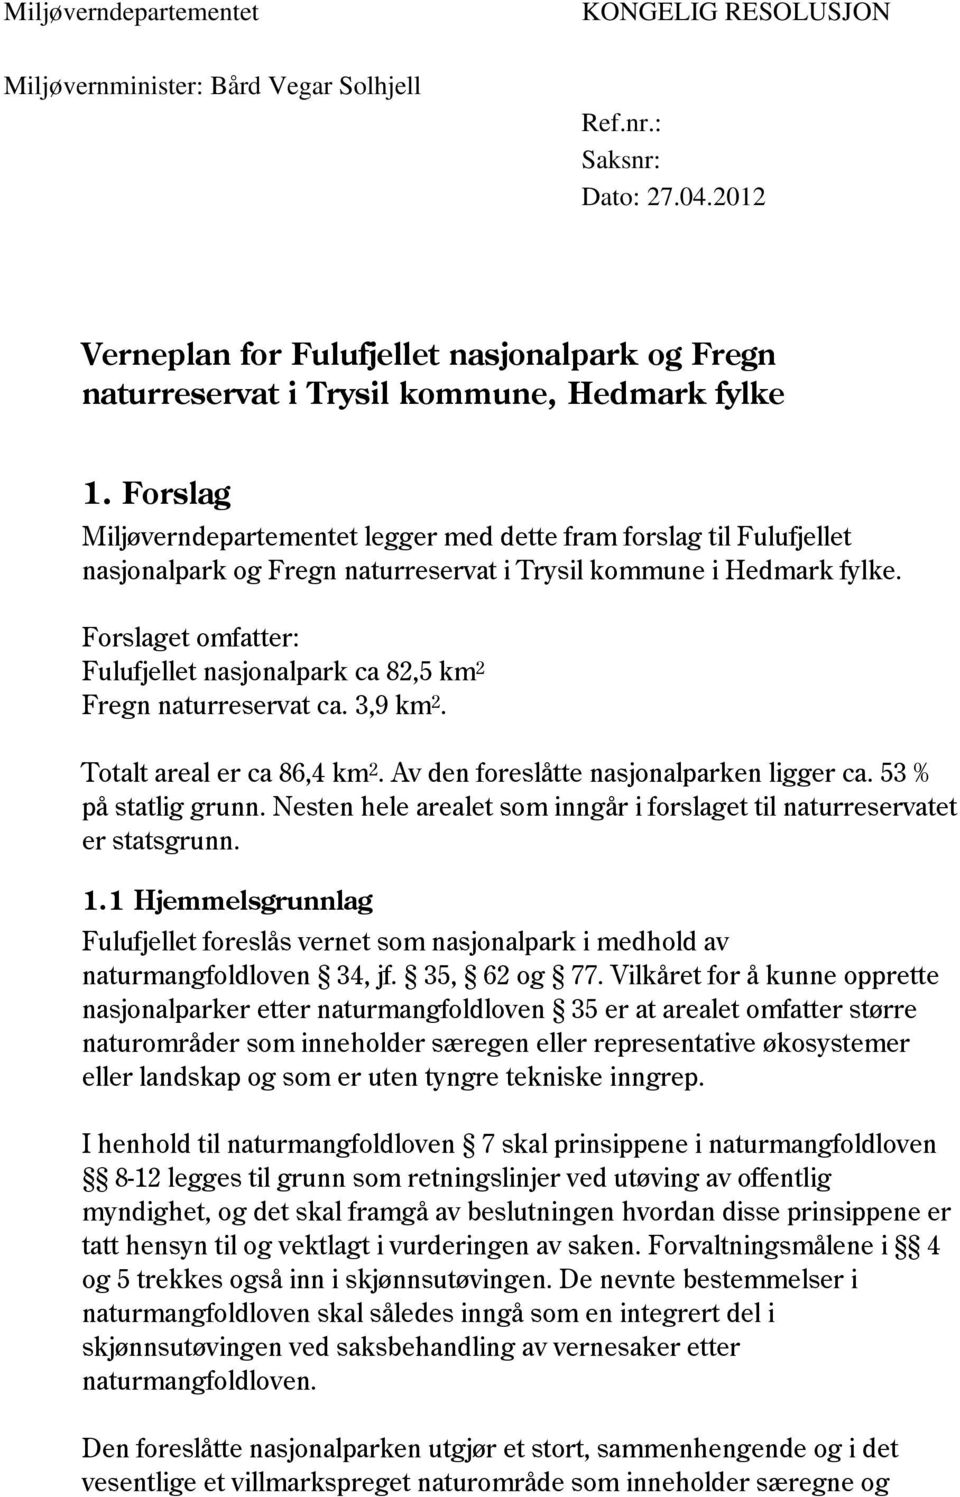 Forslag Miljøverndepartementet legger med dette fram forslag til Fulufjellet nasjonalpark og Fregn naturreservat i Trysil kommune i Hedmark fylke.